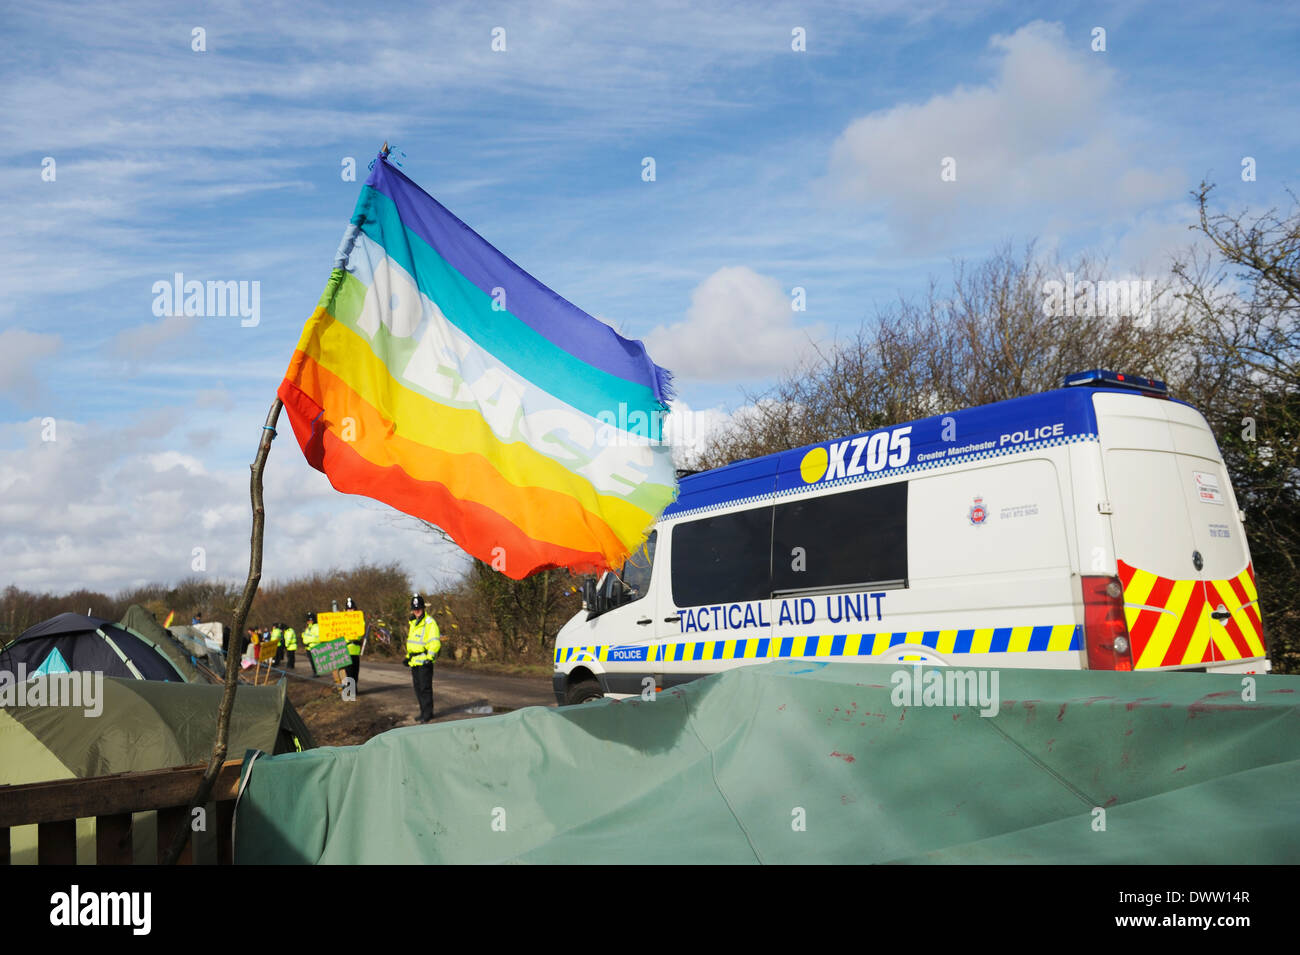 Ausilio tattico unità di guida del veicolo oltre una bandiera della pace come conduce i veicoli e i manifestanti per l'iGas sito di perforazione. Foto Stock